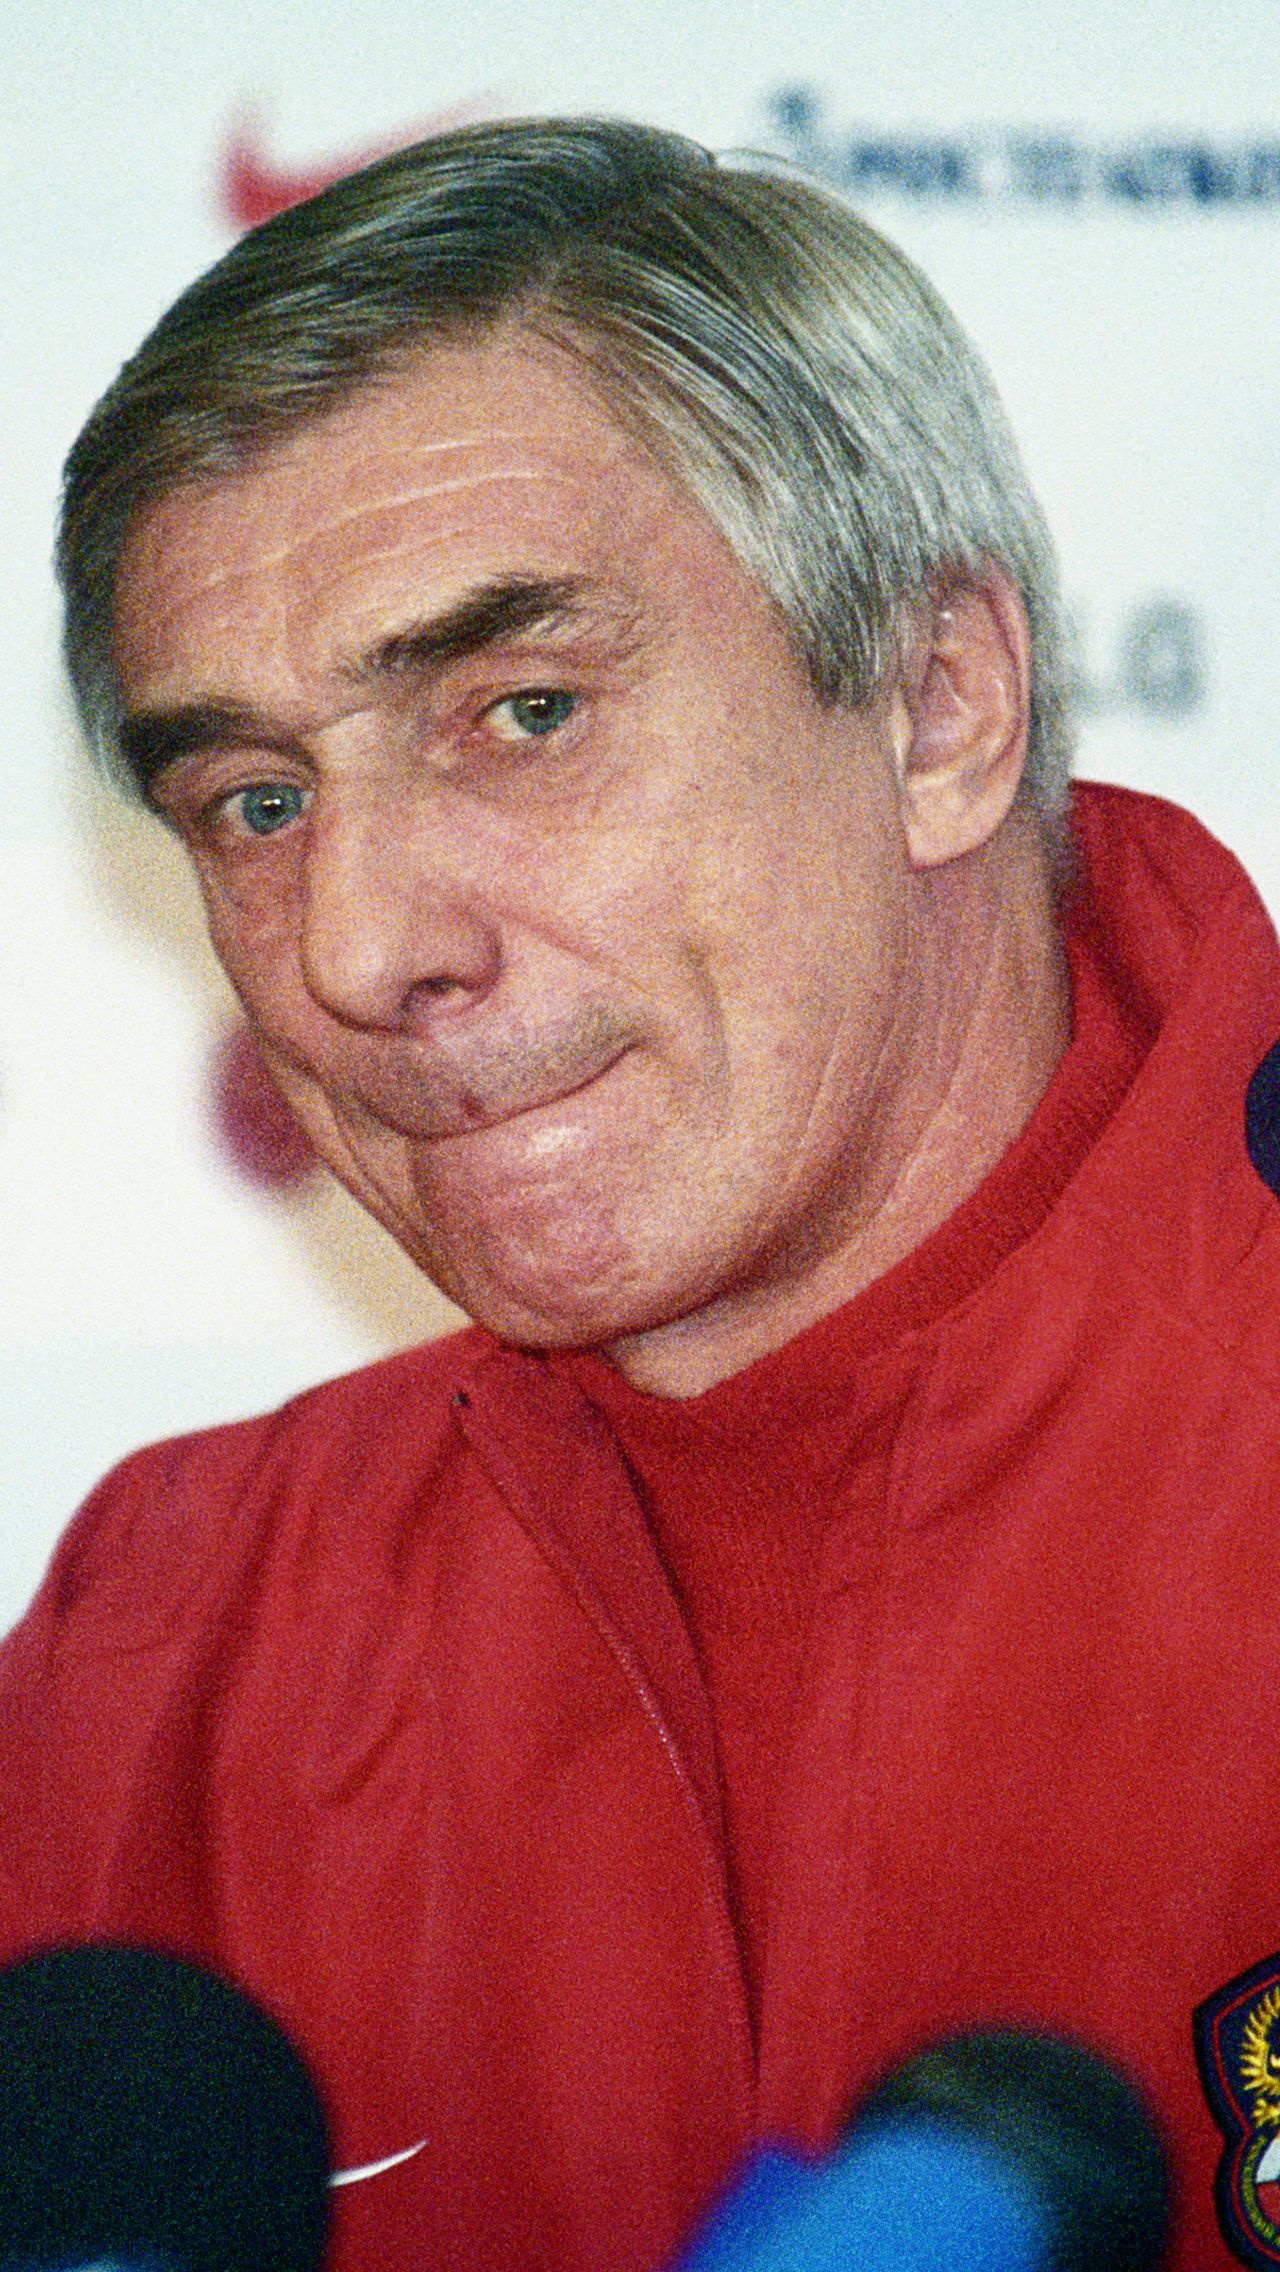 С 2003 по 2005 год Ярцев тренировал сборную России. Под его руководством команда отобралась на Евро-2004, где не вышла из группы. А потом было поражение в Португалии со счётом 1:7. Ярцев тогда покинул поле прямо во время матча.